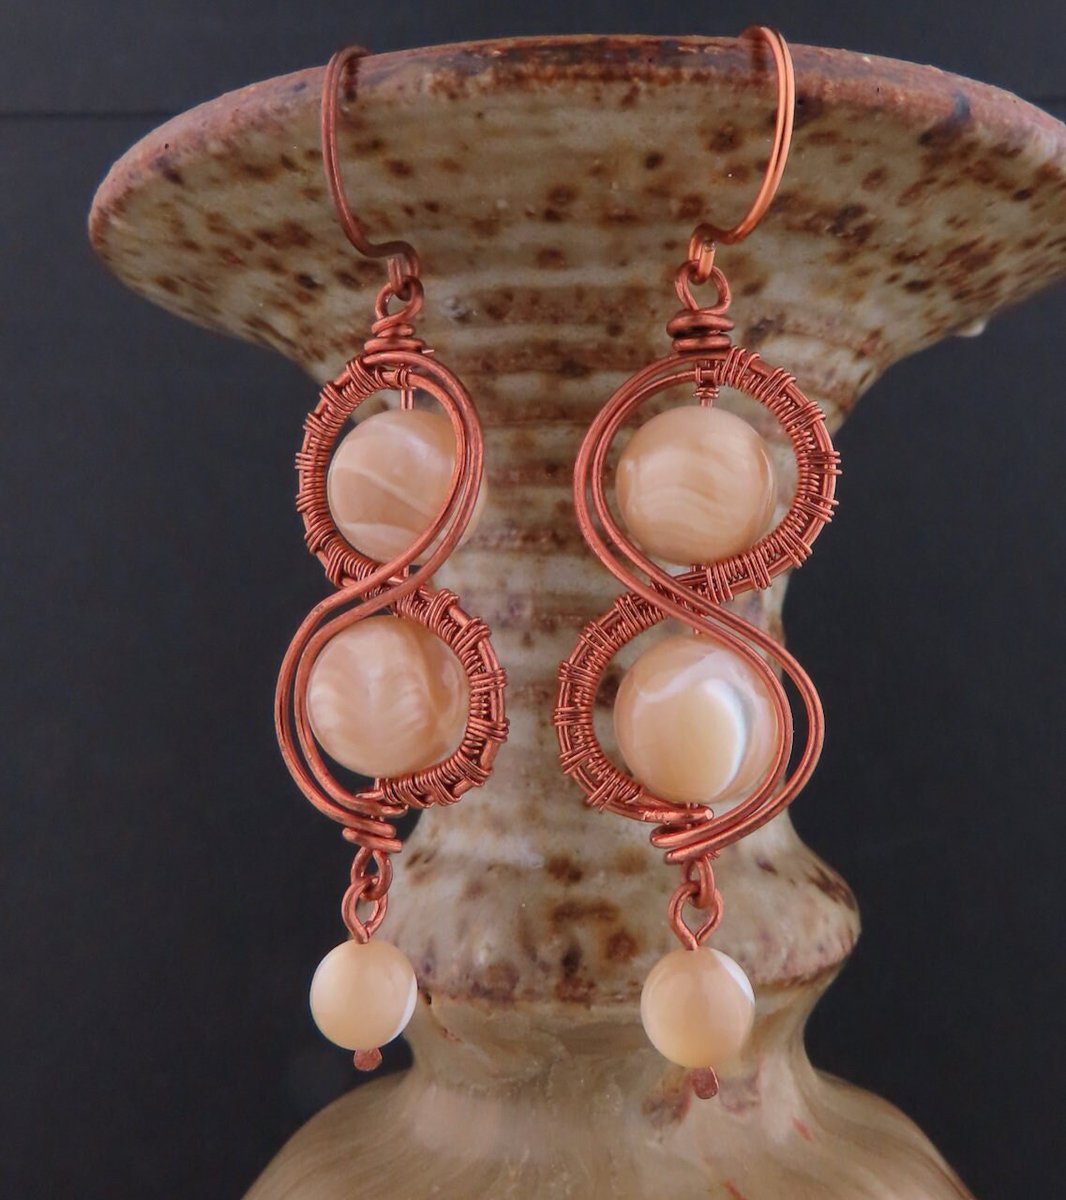 Copper Mother of Pearl Wire Wrapped Long Dangle Earrings etsy.me/3NR34fY #copperearrings #motherofpearlearrings #wirewrapearrings #figure8jewelry #copperjewelry #mopjewelry #copperjewelry #wirewrappedjewelry #copperpearls #weartowork #goingout #giftforsister